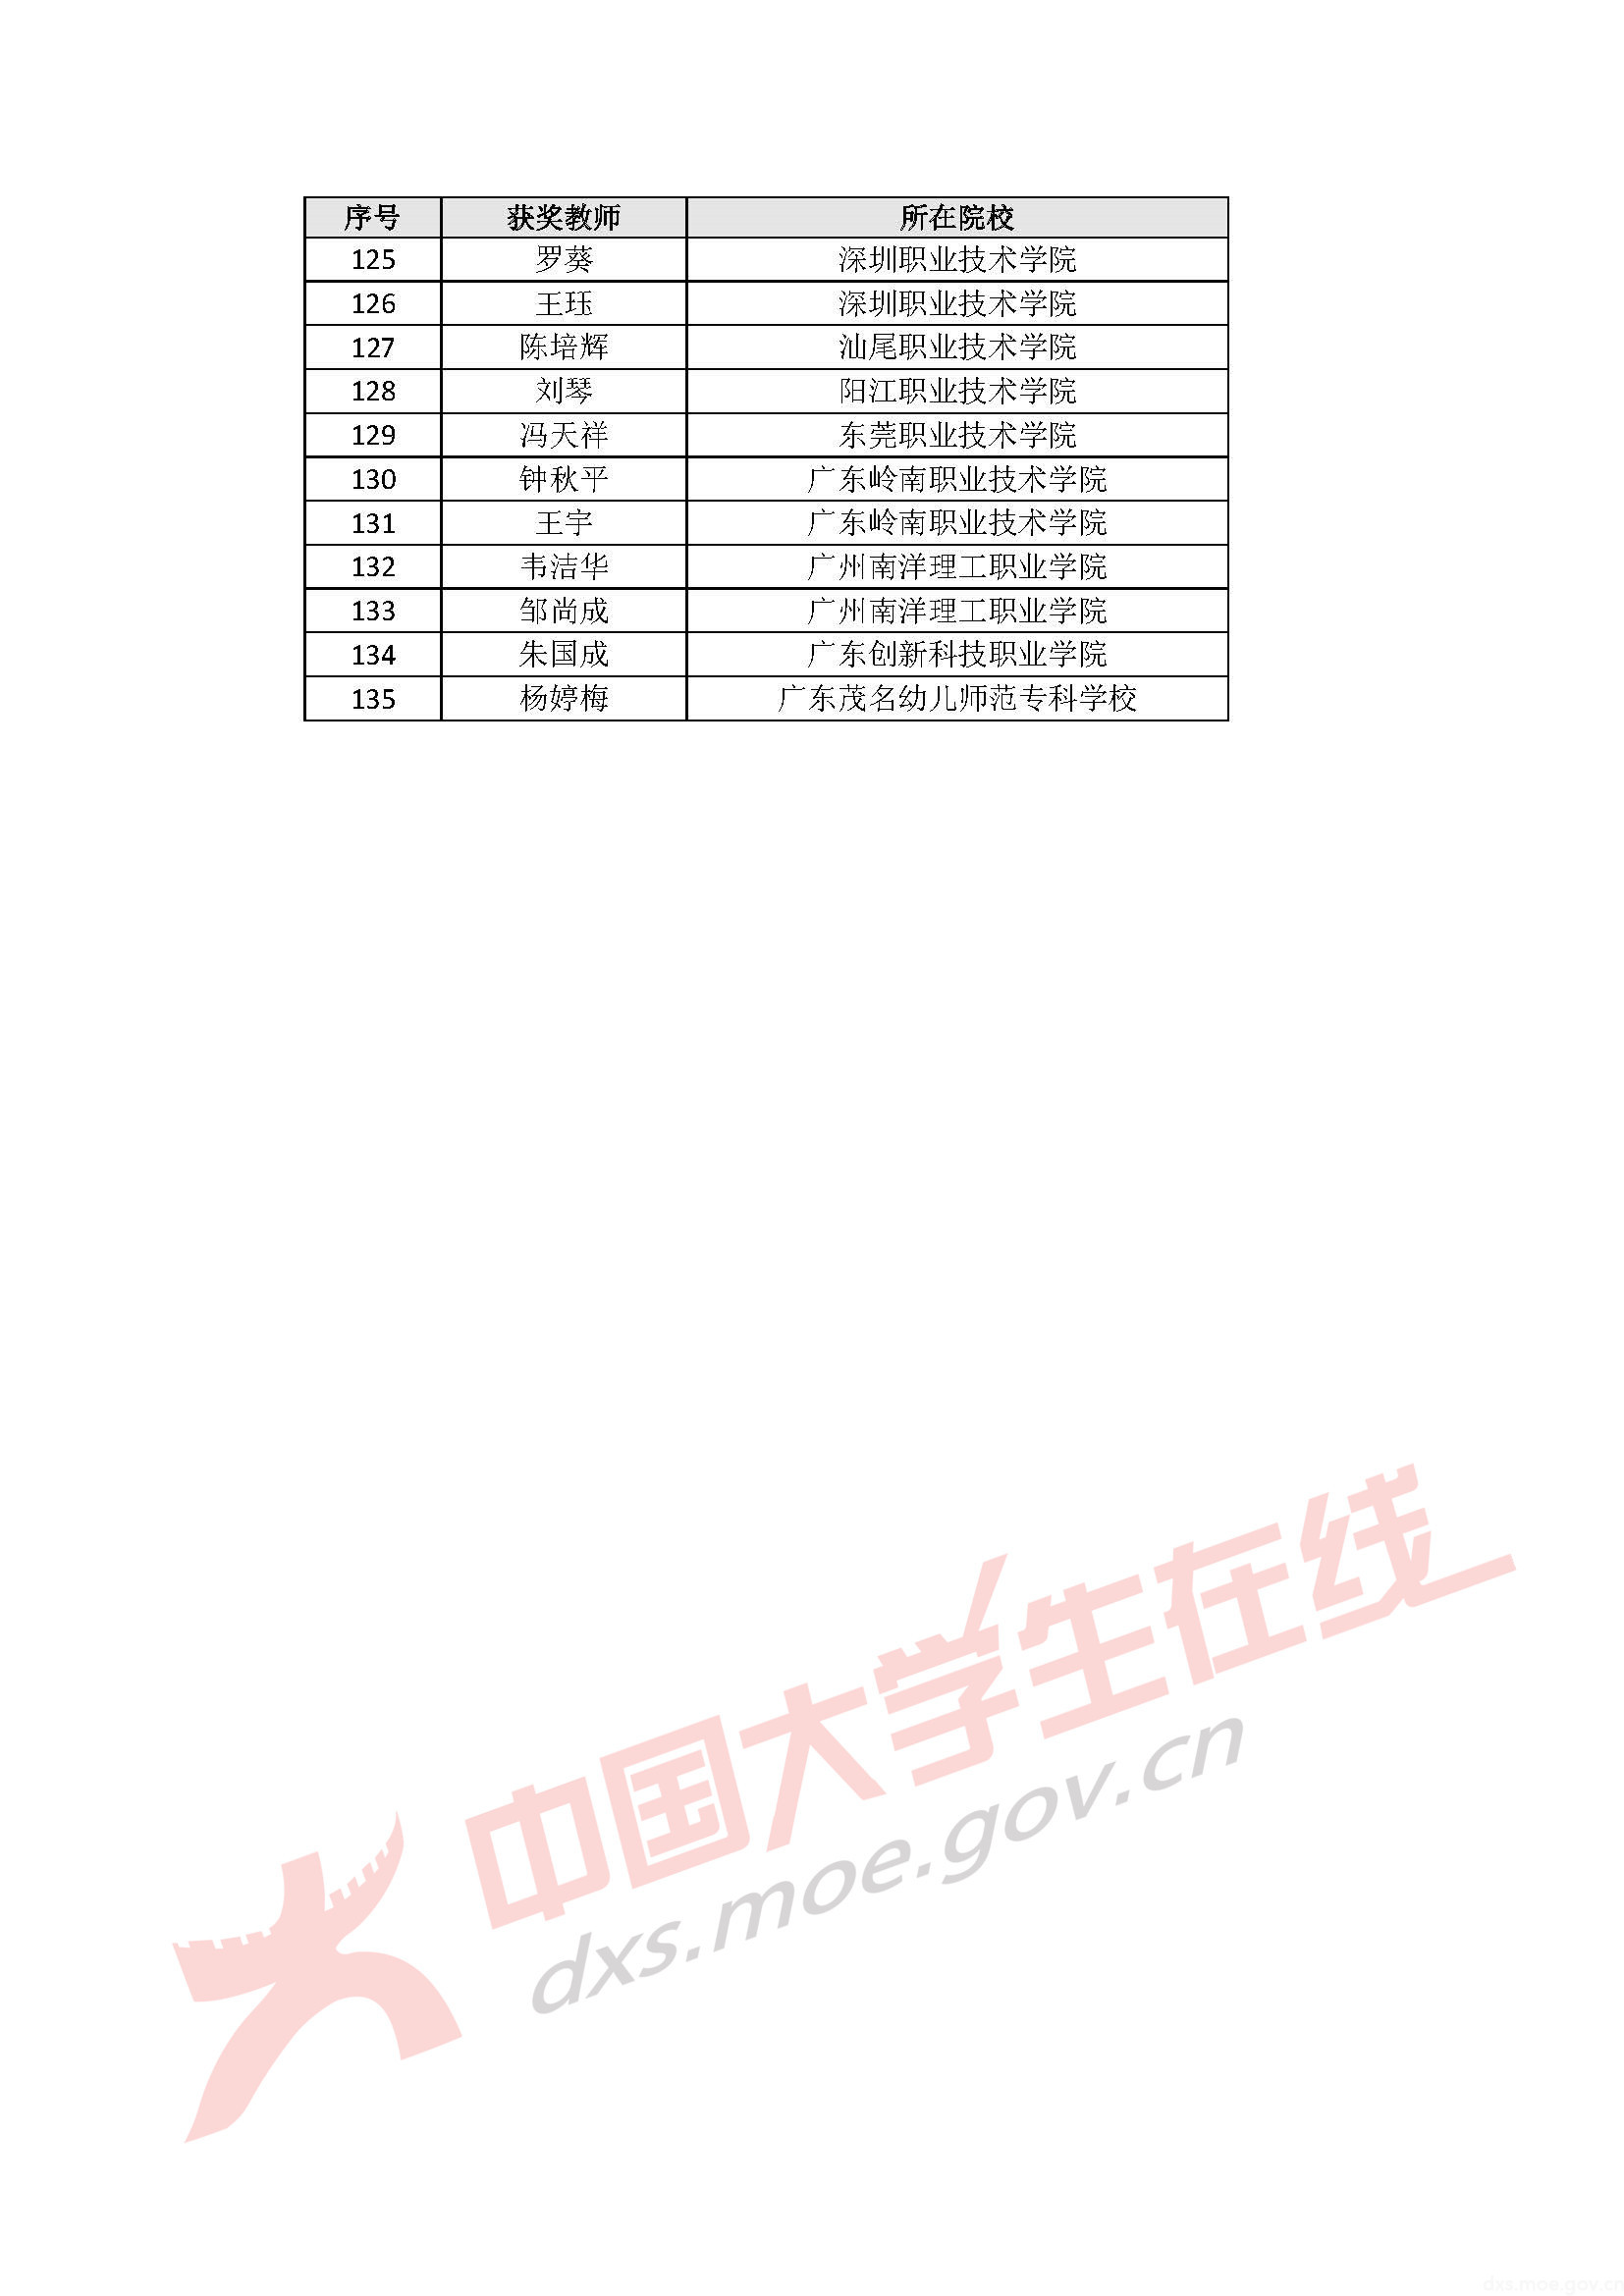 2020年全国大学生数学建模竞赛广东省分赛获奖名单_页面_43.jpg